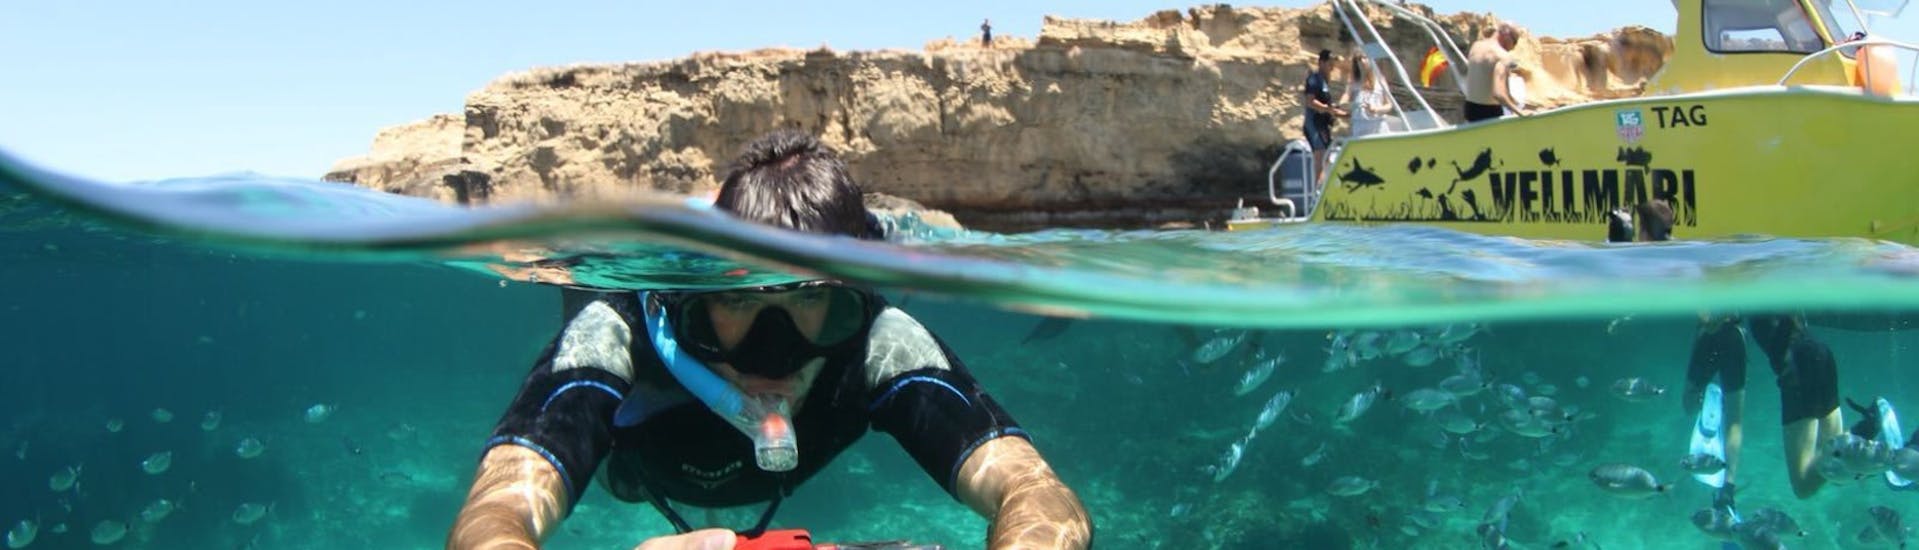 Junge mit einer Kamera unter Wasser beim Schnorcheln, umgeben von vielen Fischen während des Schnorchelns im Naturpark Ses Salines von Formentera durch Vellmari Diving Center Formentera.